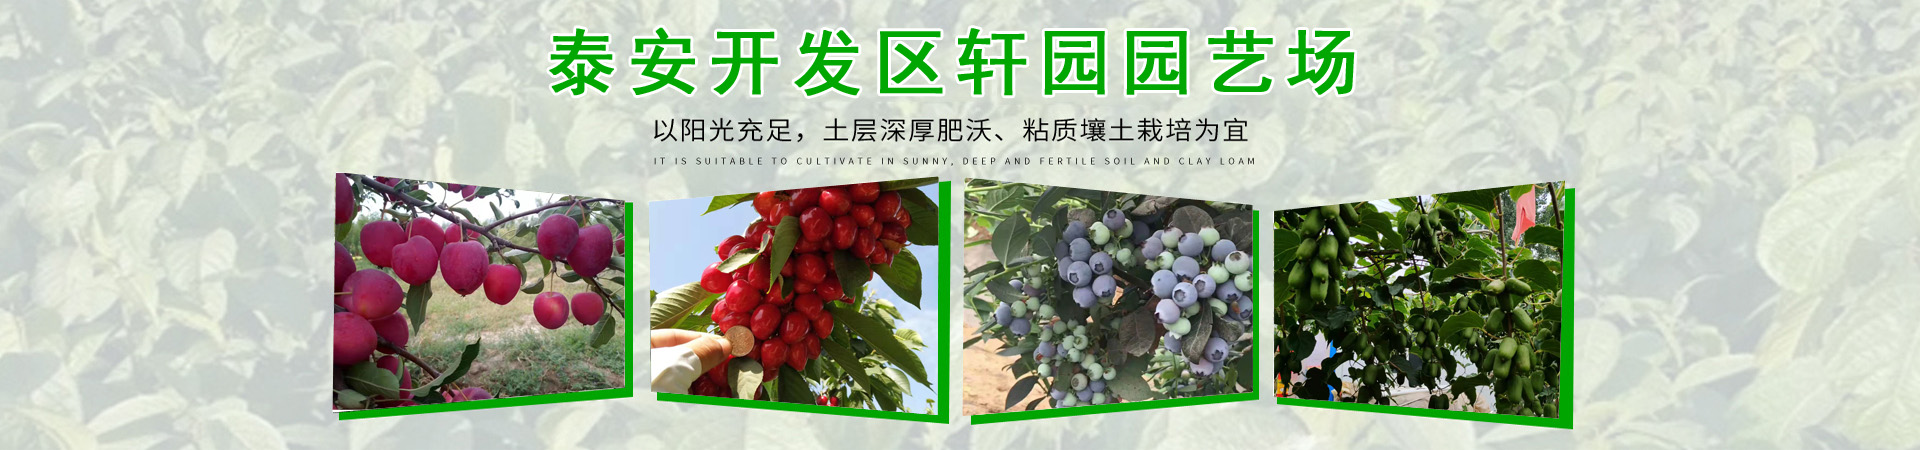 樱桃苗、上海本地樱桃苗、上海、上海樱桃苗